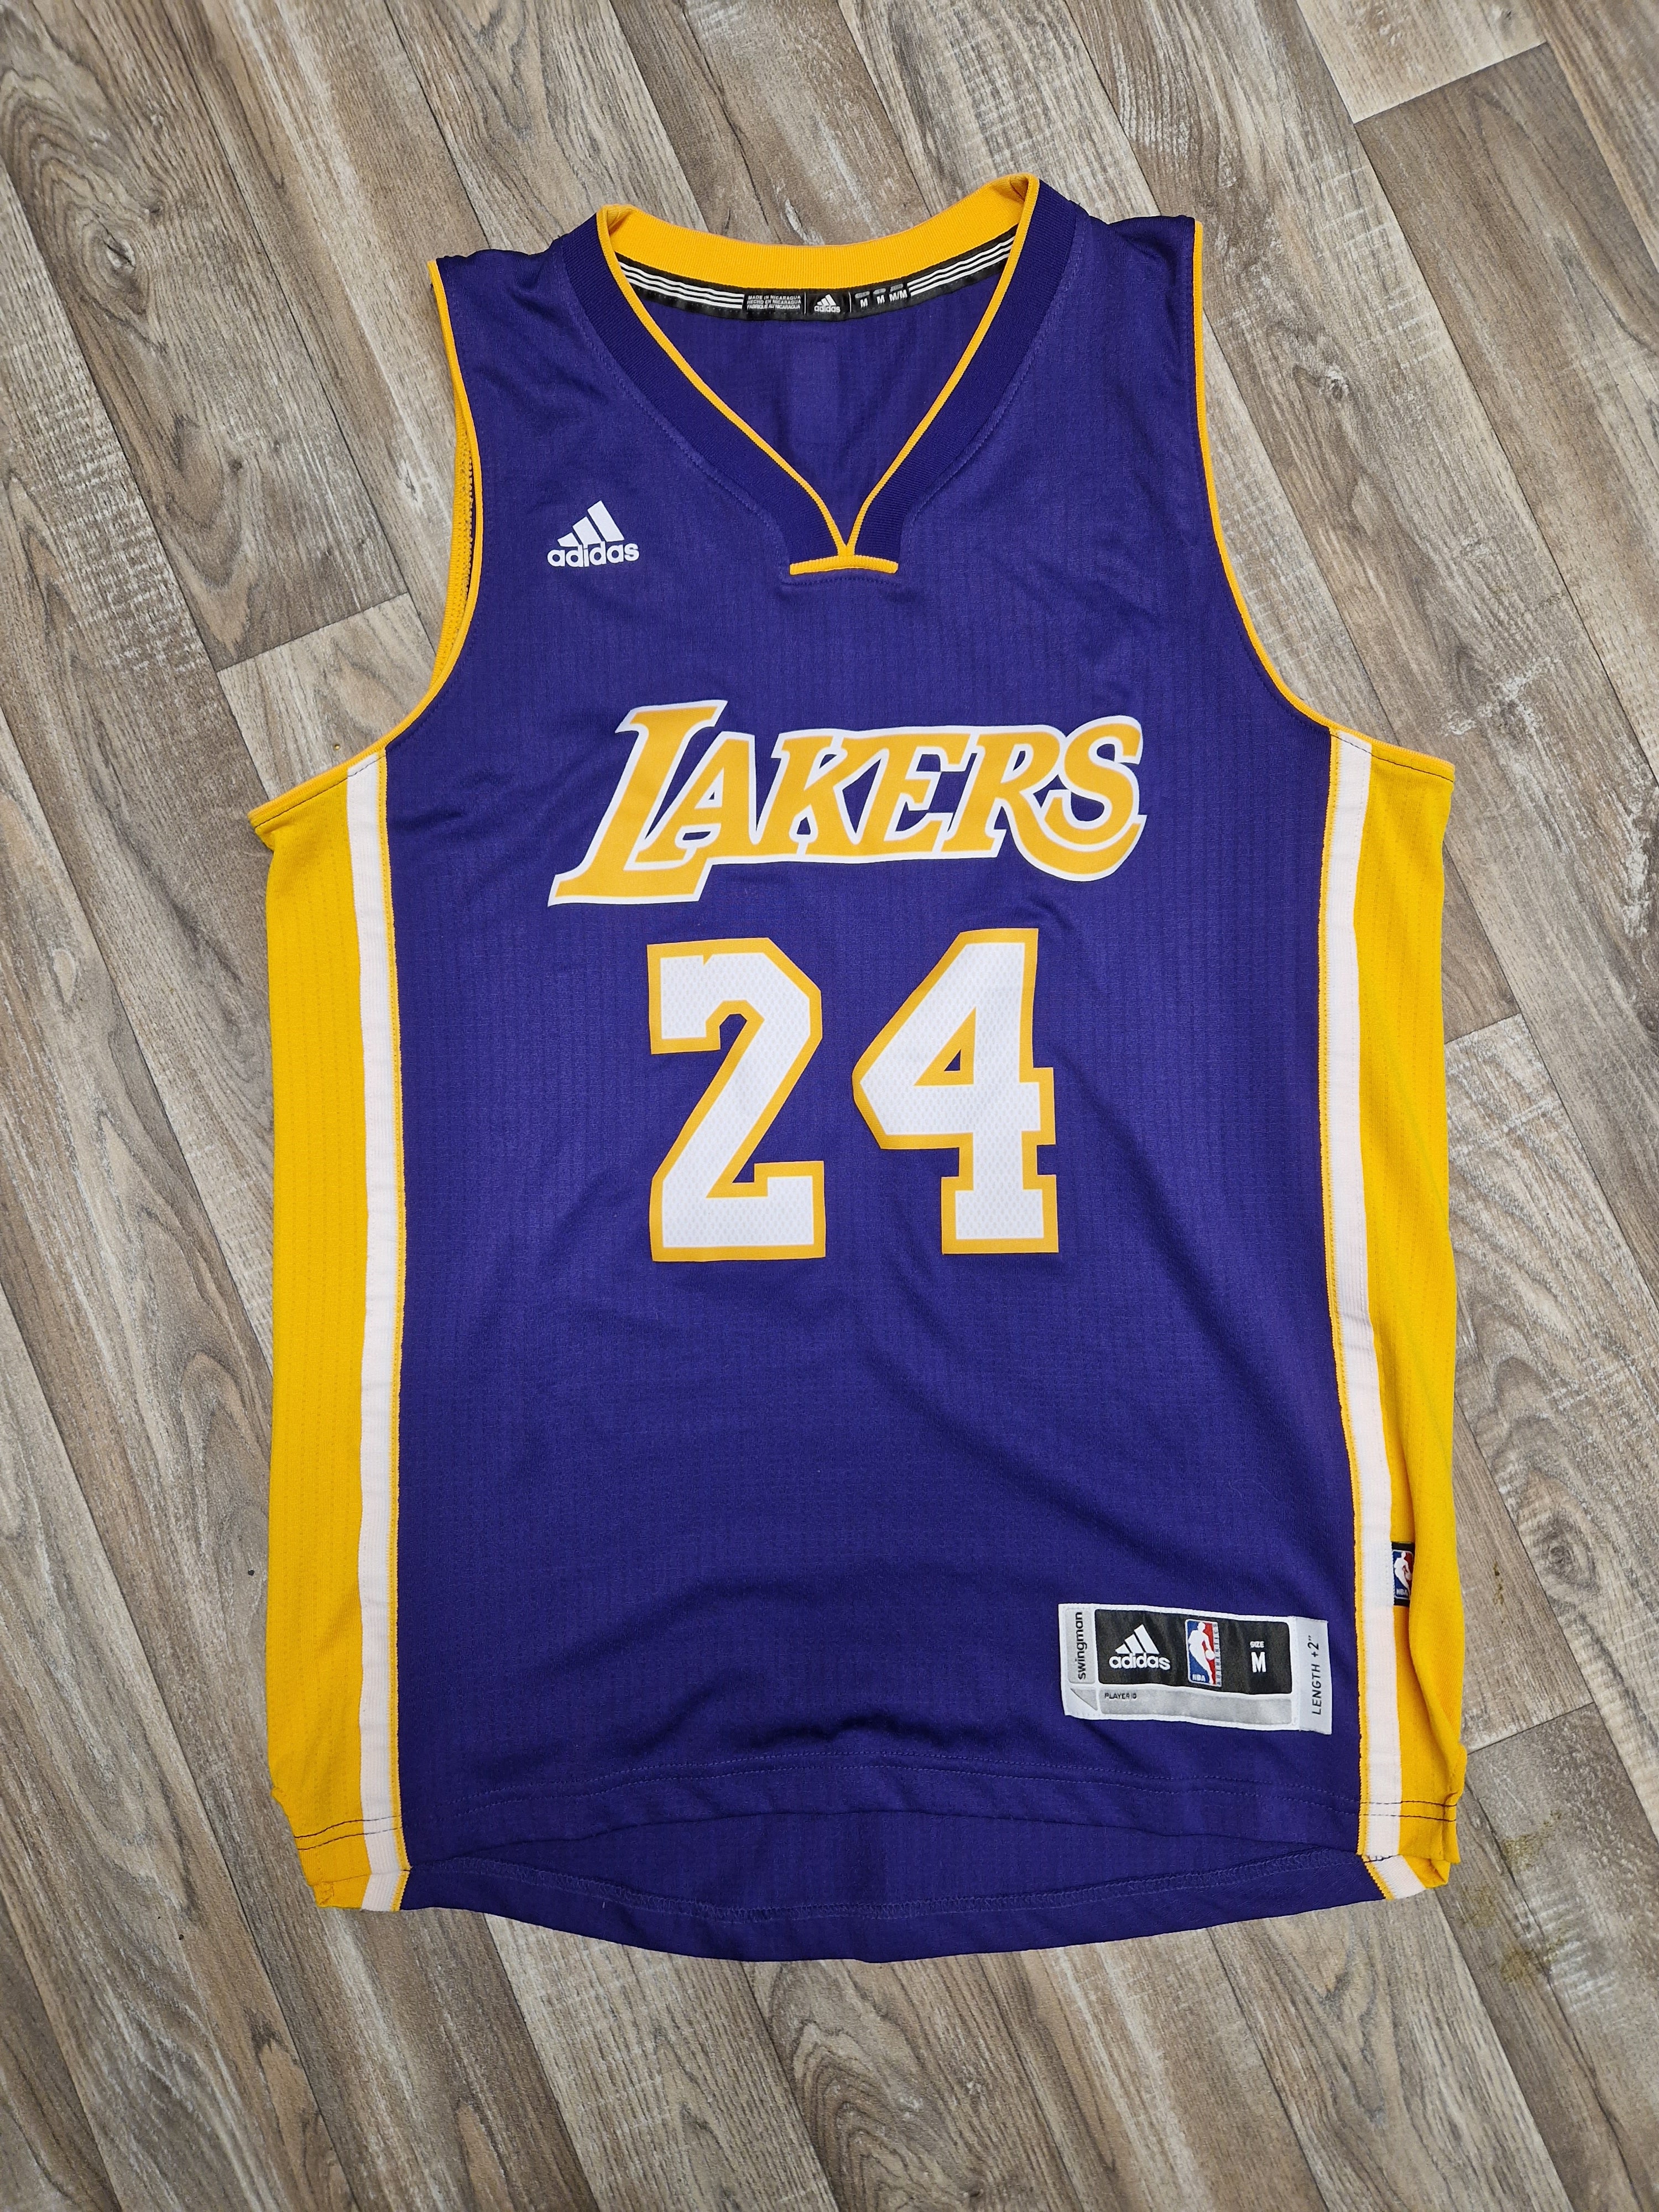 Adidas Authentic NBA Jersey LA Lakers Kobe Bryant Retirement Size